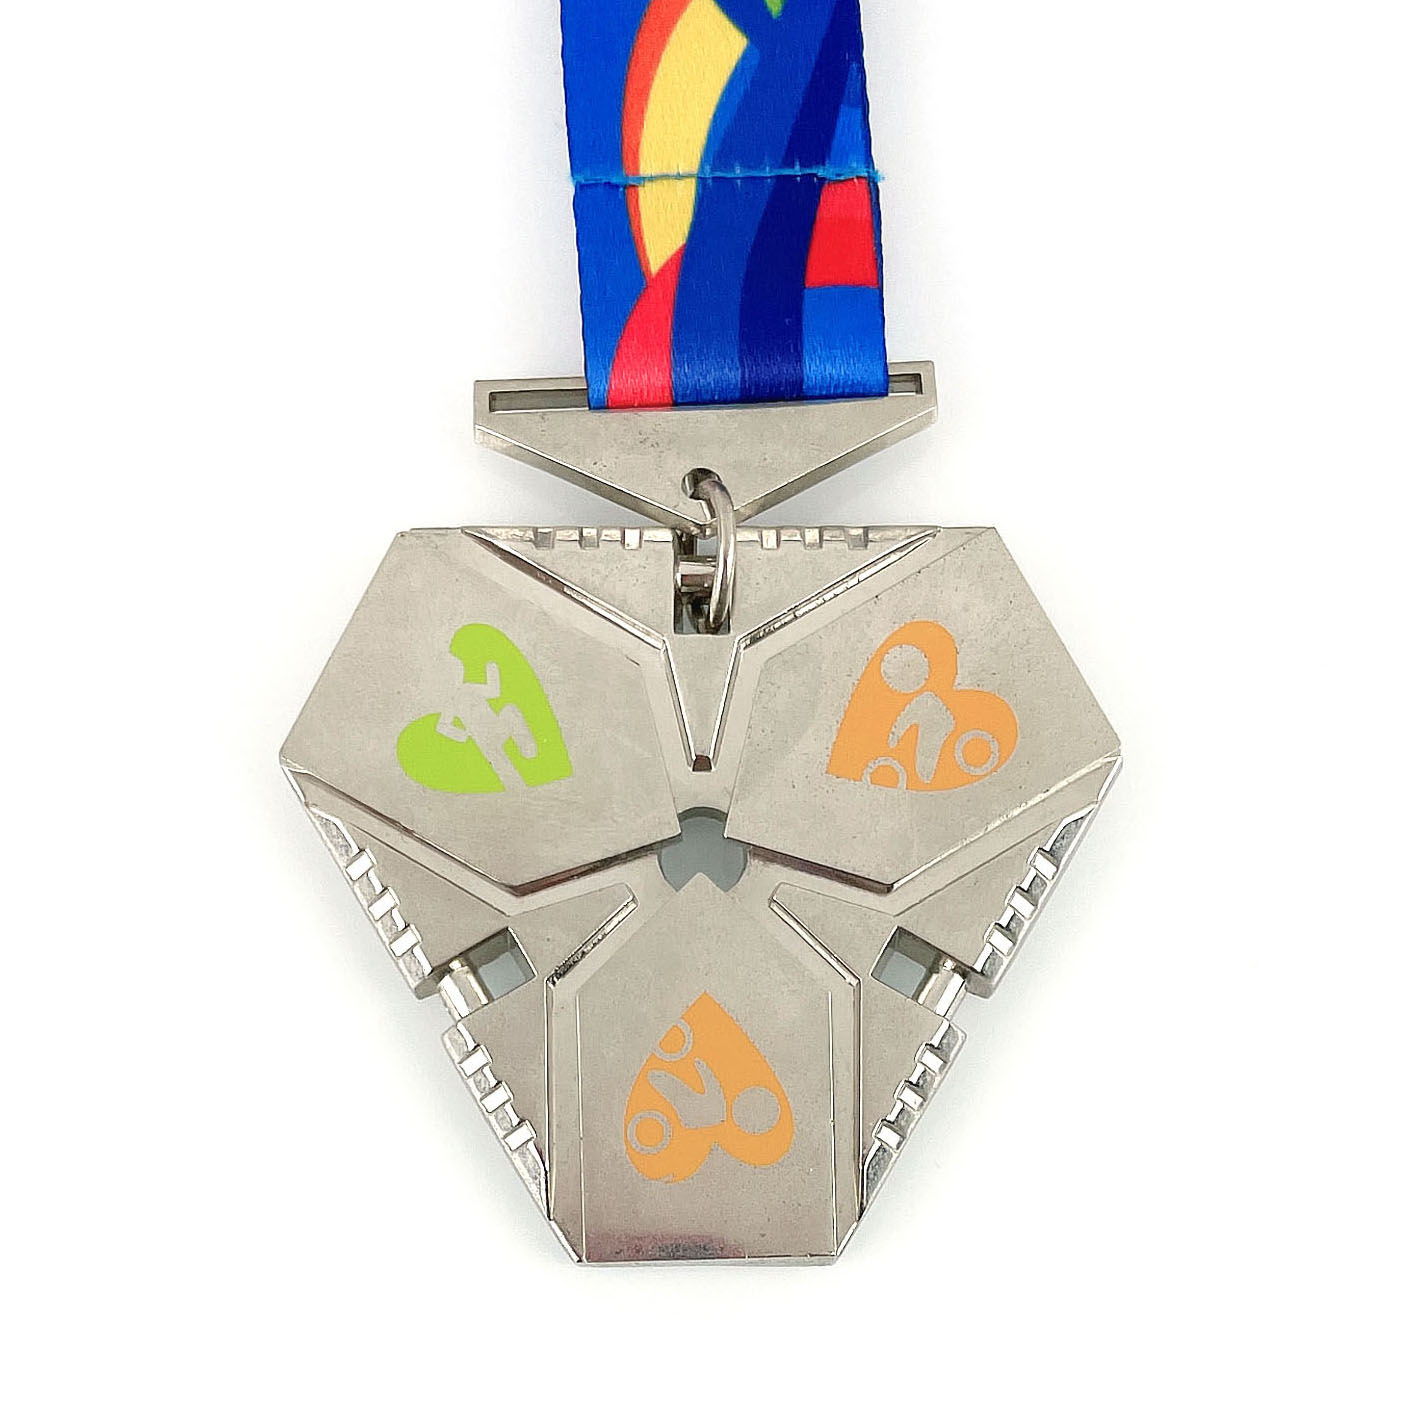 Λαμπερό Ασημένιο Μετάλλιο Τριάθλου με τυπωμένο λογότυπο